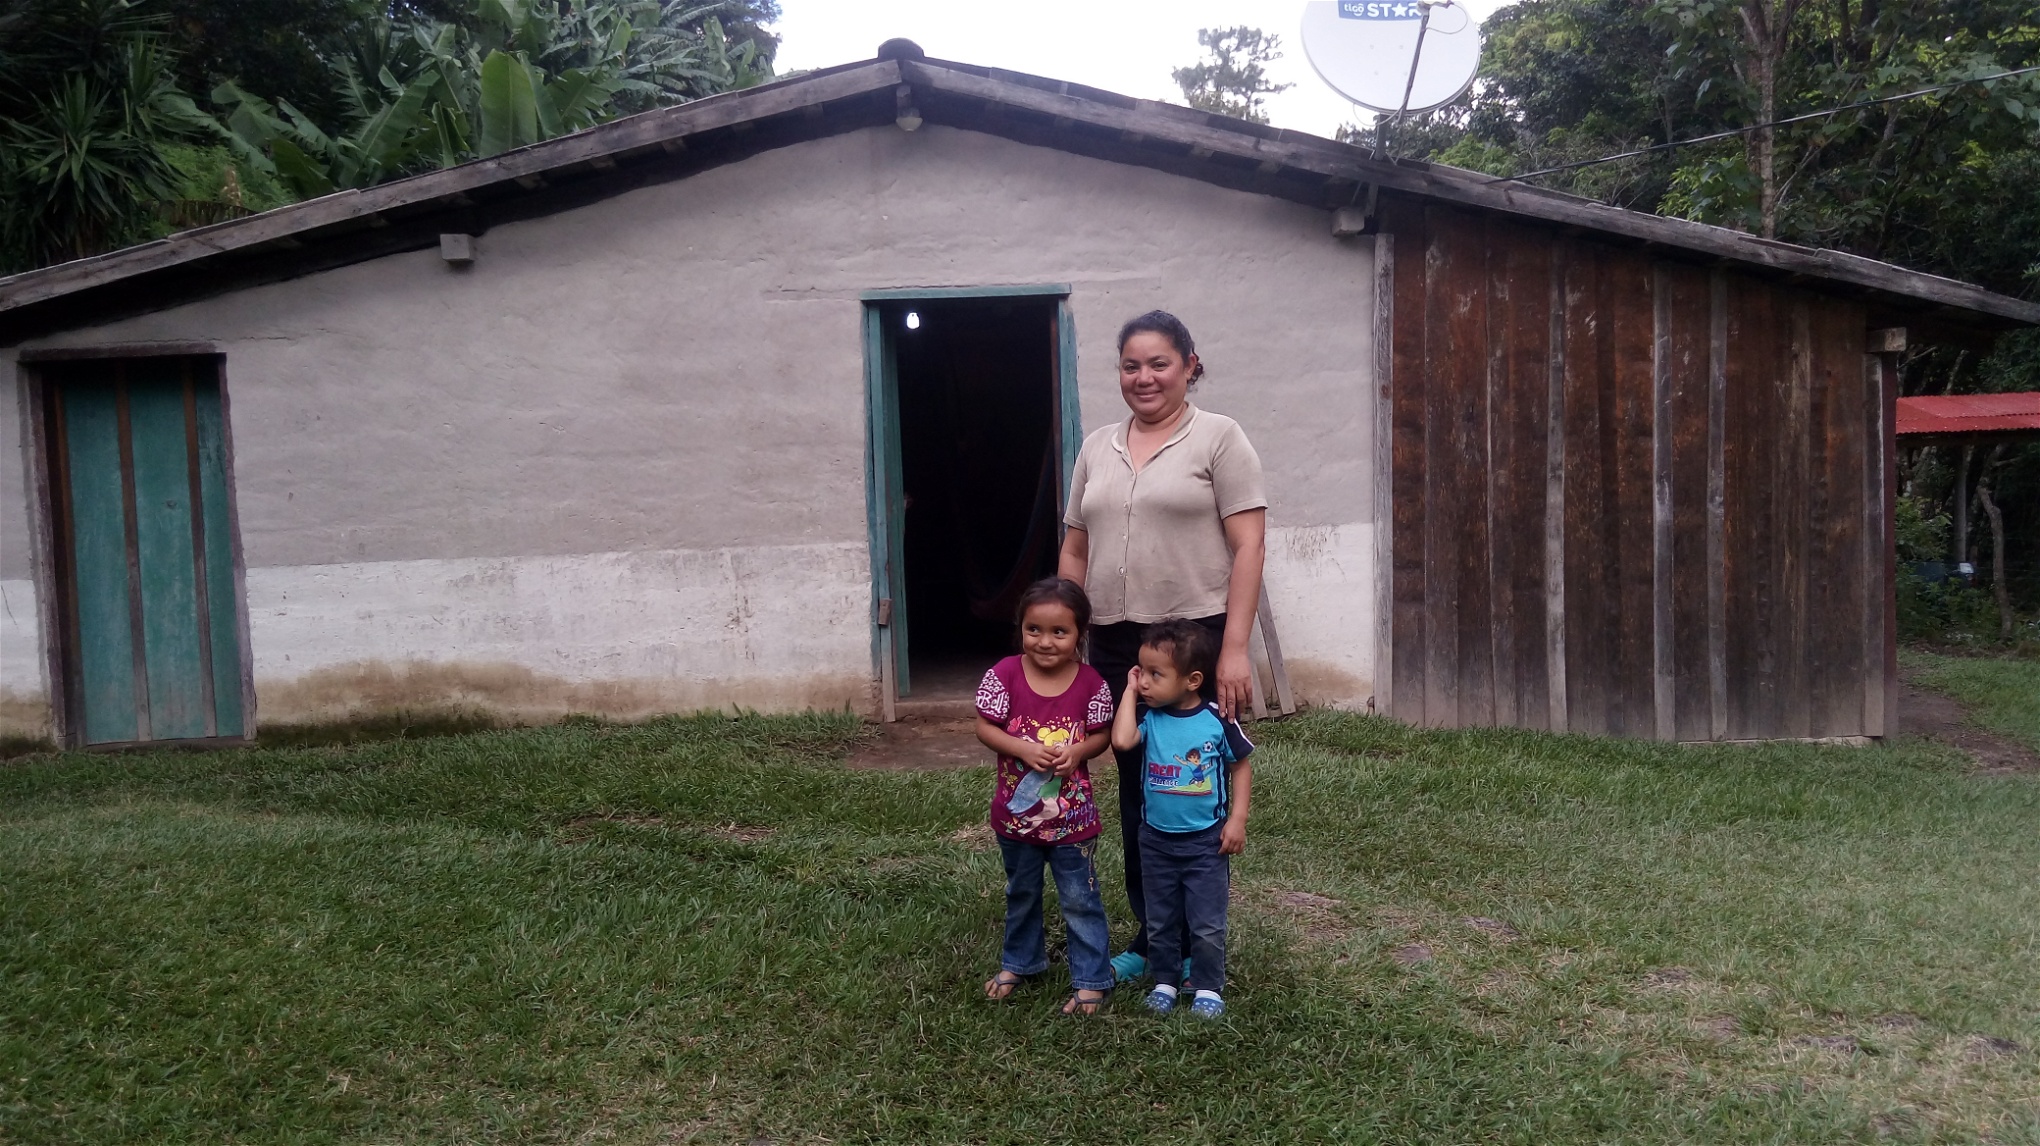 Läraren Carolina Martinez står tillsammans med sina barn utanför sitt hus i byn, där en lampa står tänd. Sedan 2012 har de 40 familjerna i Joya de Talchiga haft tillgång till el tack vare sitt eget engagemang. 